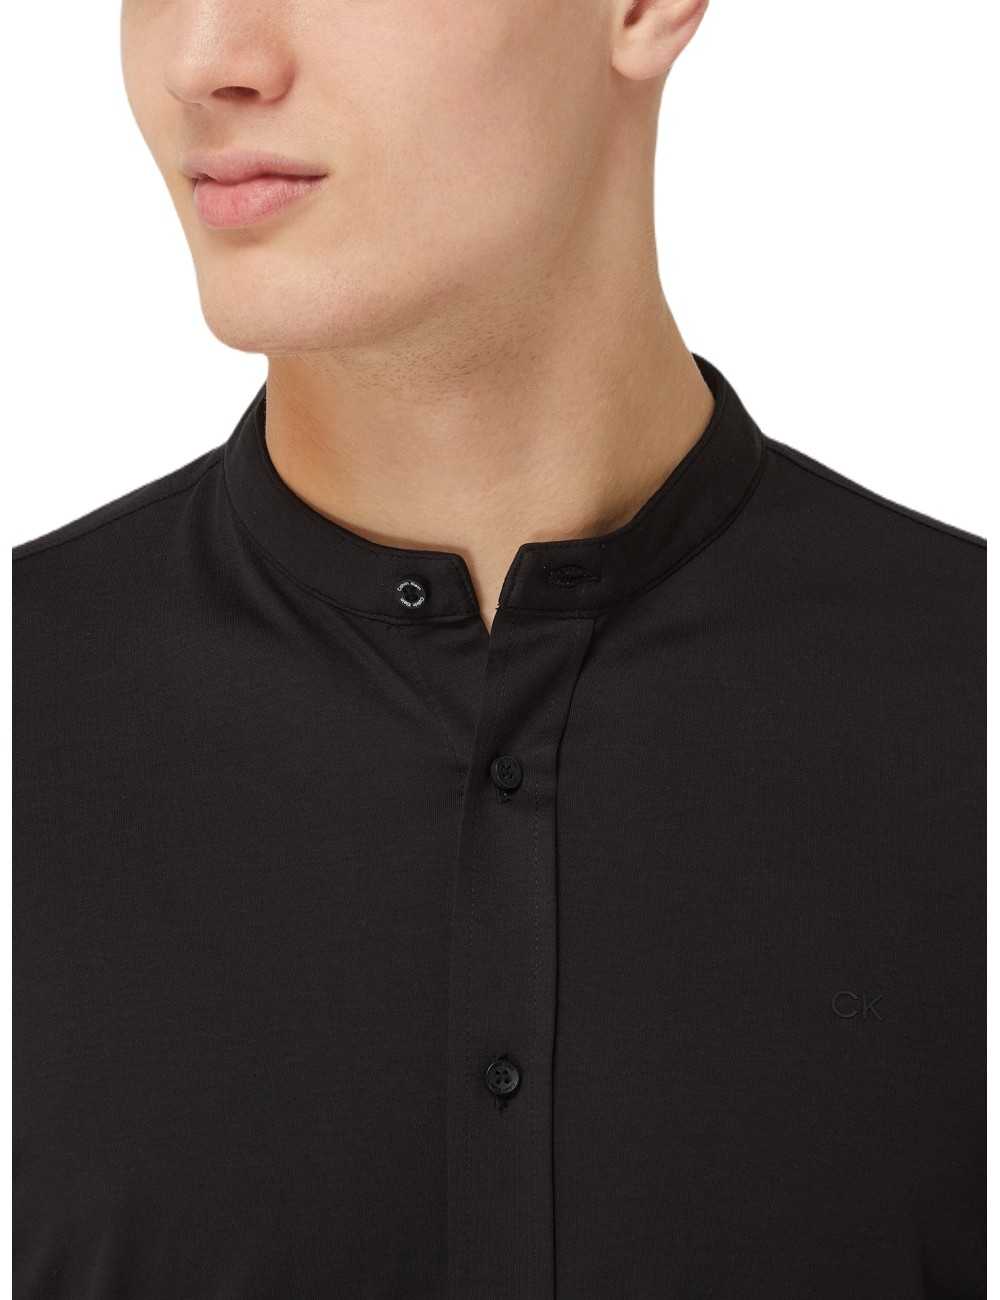 Calvin Klein camicia uomo coreana nera liquid touch - Camicie Uomo